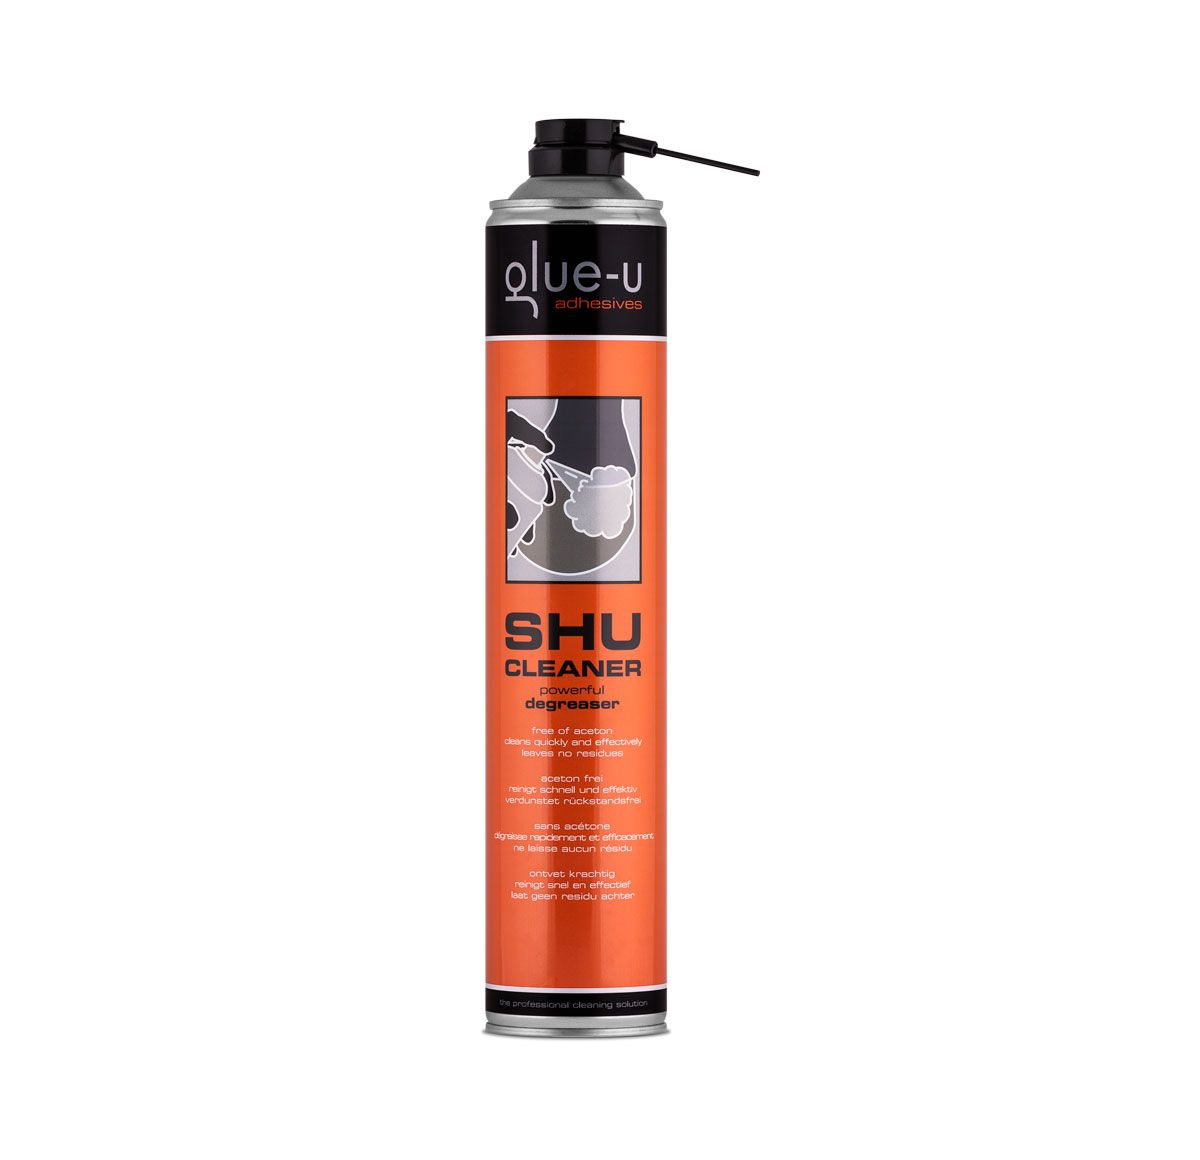 Glushu - glue on shoe - Glue-U Adhesives